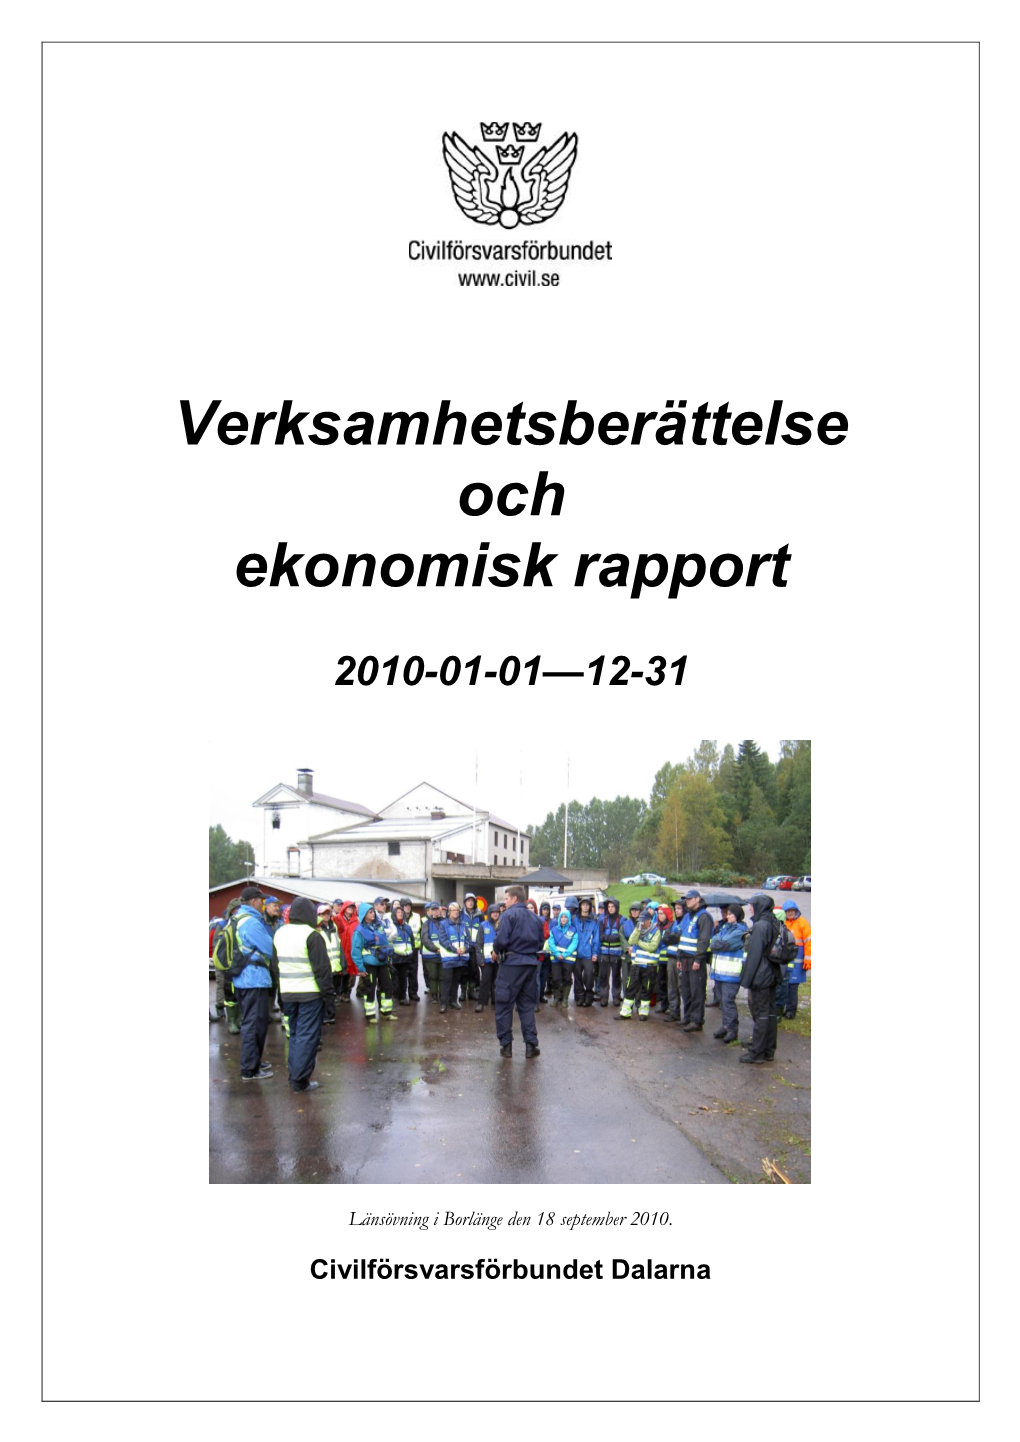 Civilförsvarsförbundet Gävleborg Och Sveriges Civilförsvarsförbund För Ett Mycket Gott Samarbete Under Verksamhetsåret